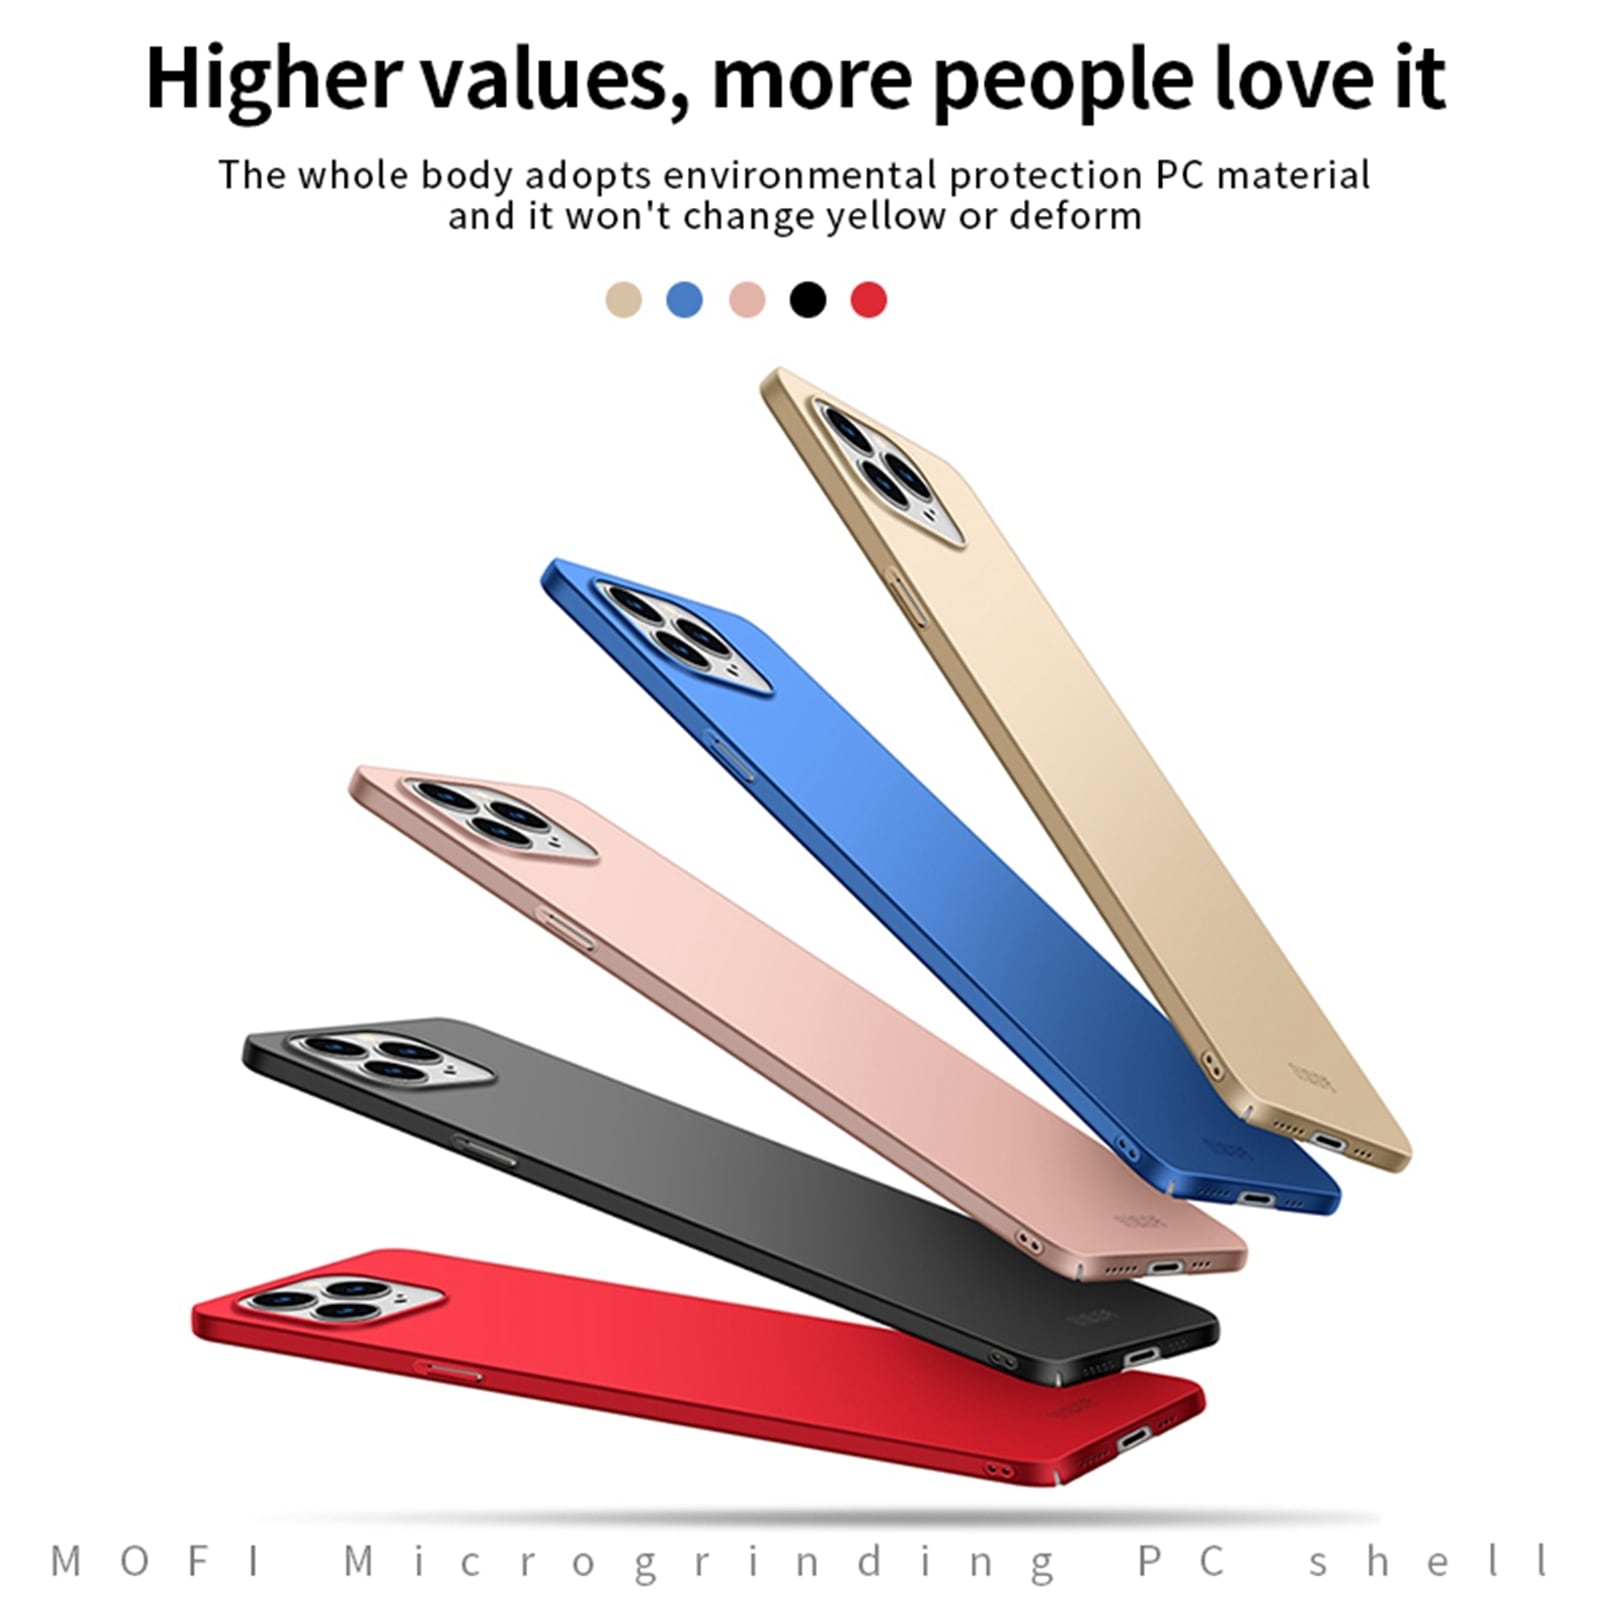 Erittäin ohut MOFI-kuori iPhone 13 Pro - Rose Gold